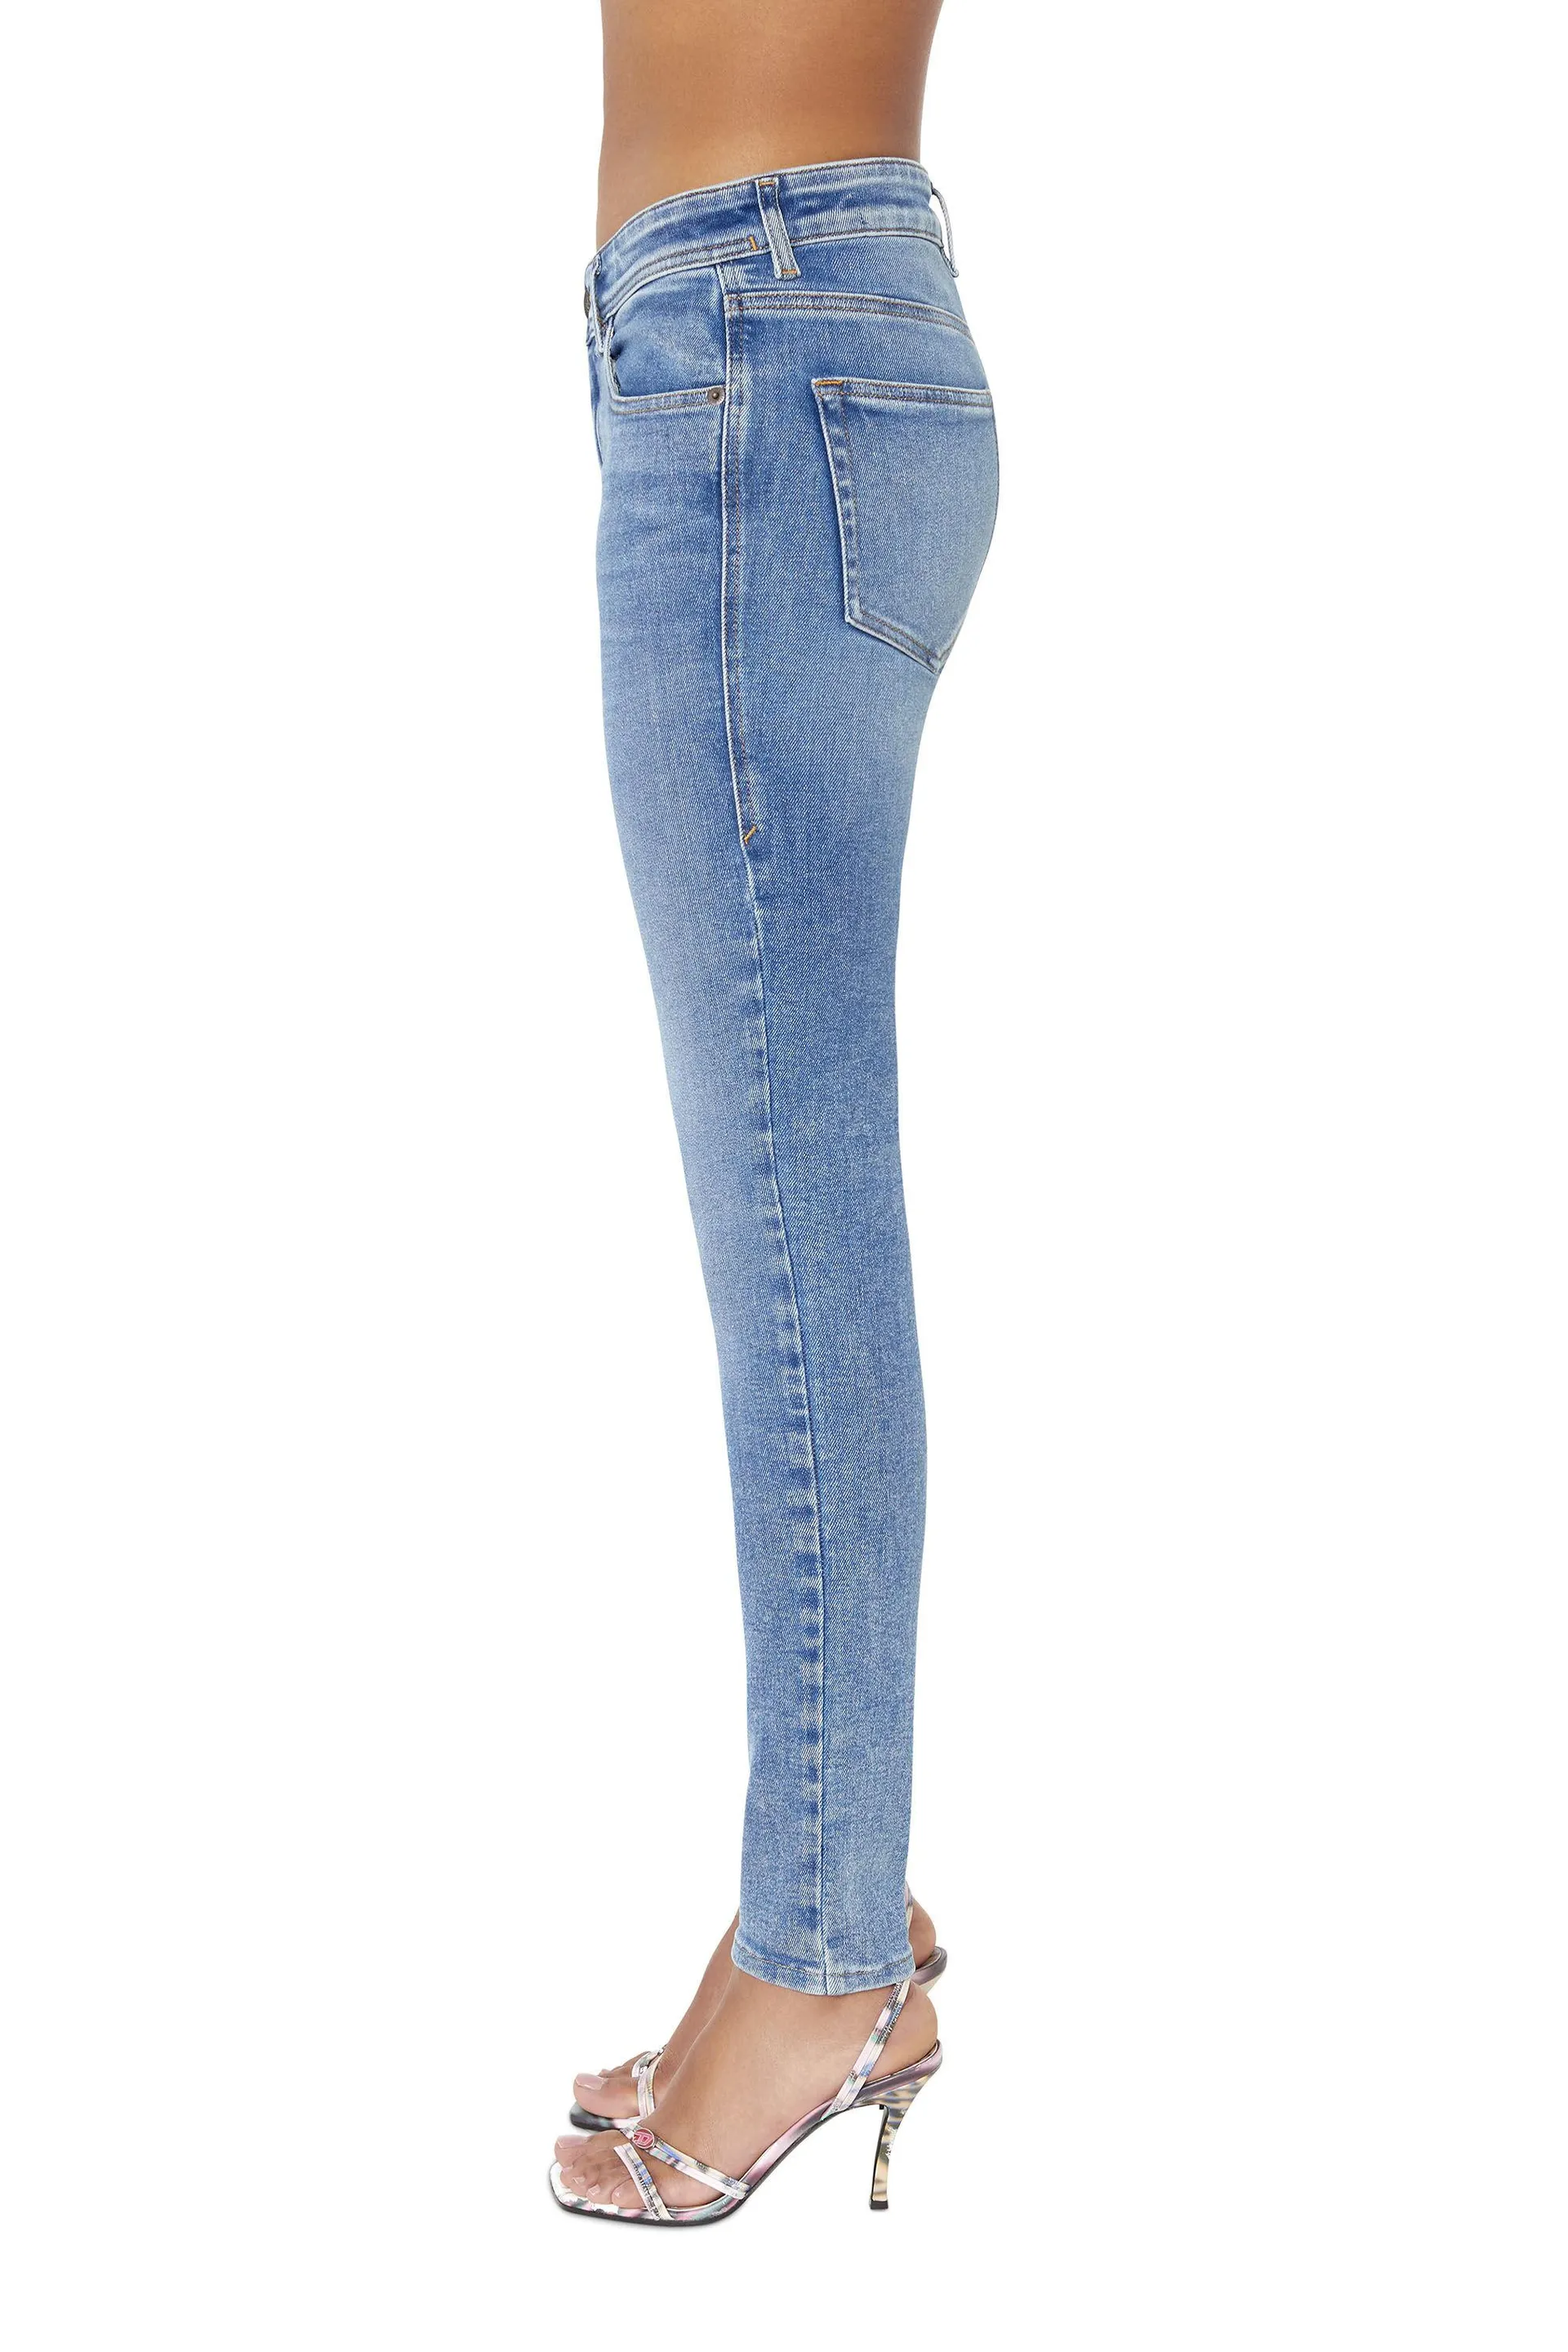 2017 slandy 09d62 super skinny jeans